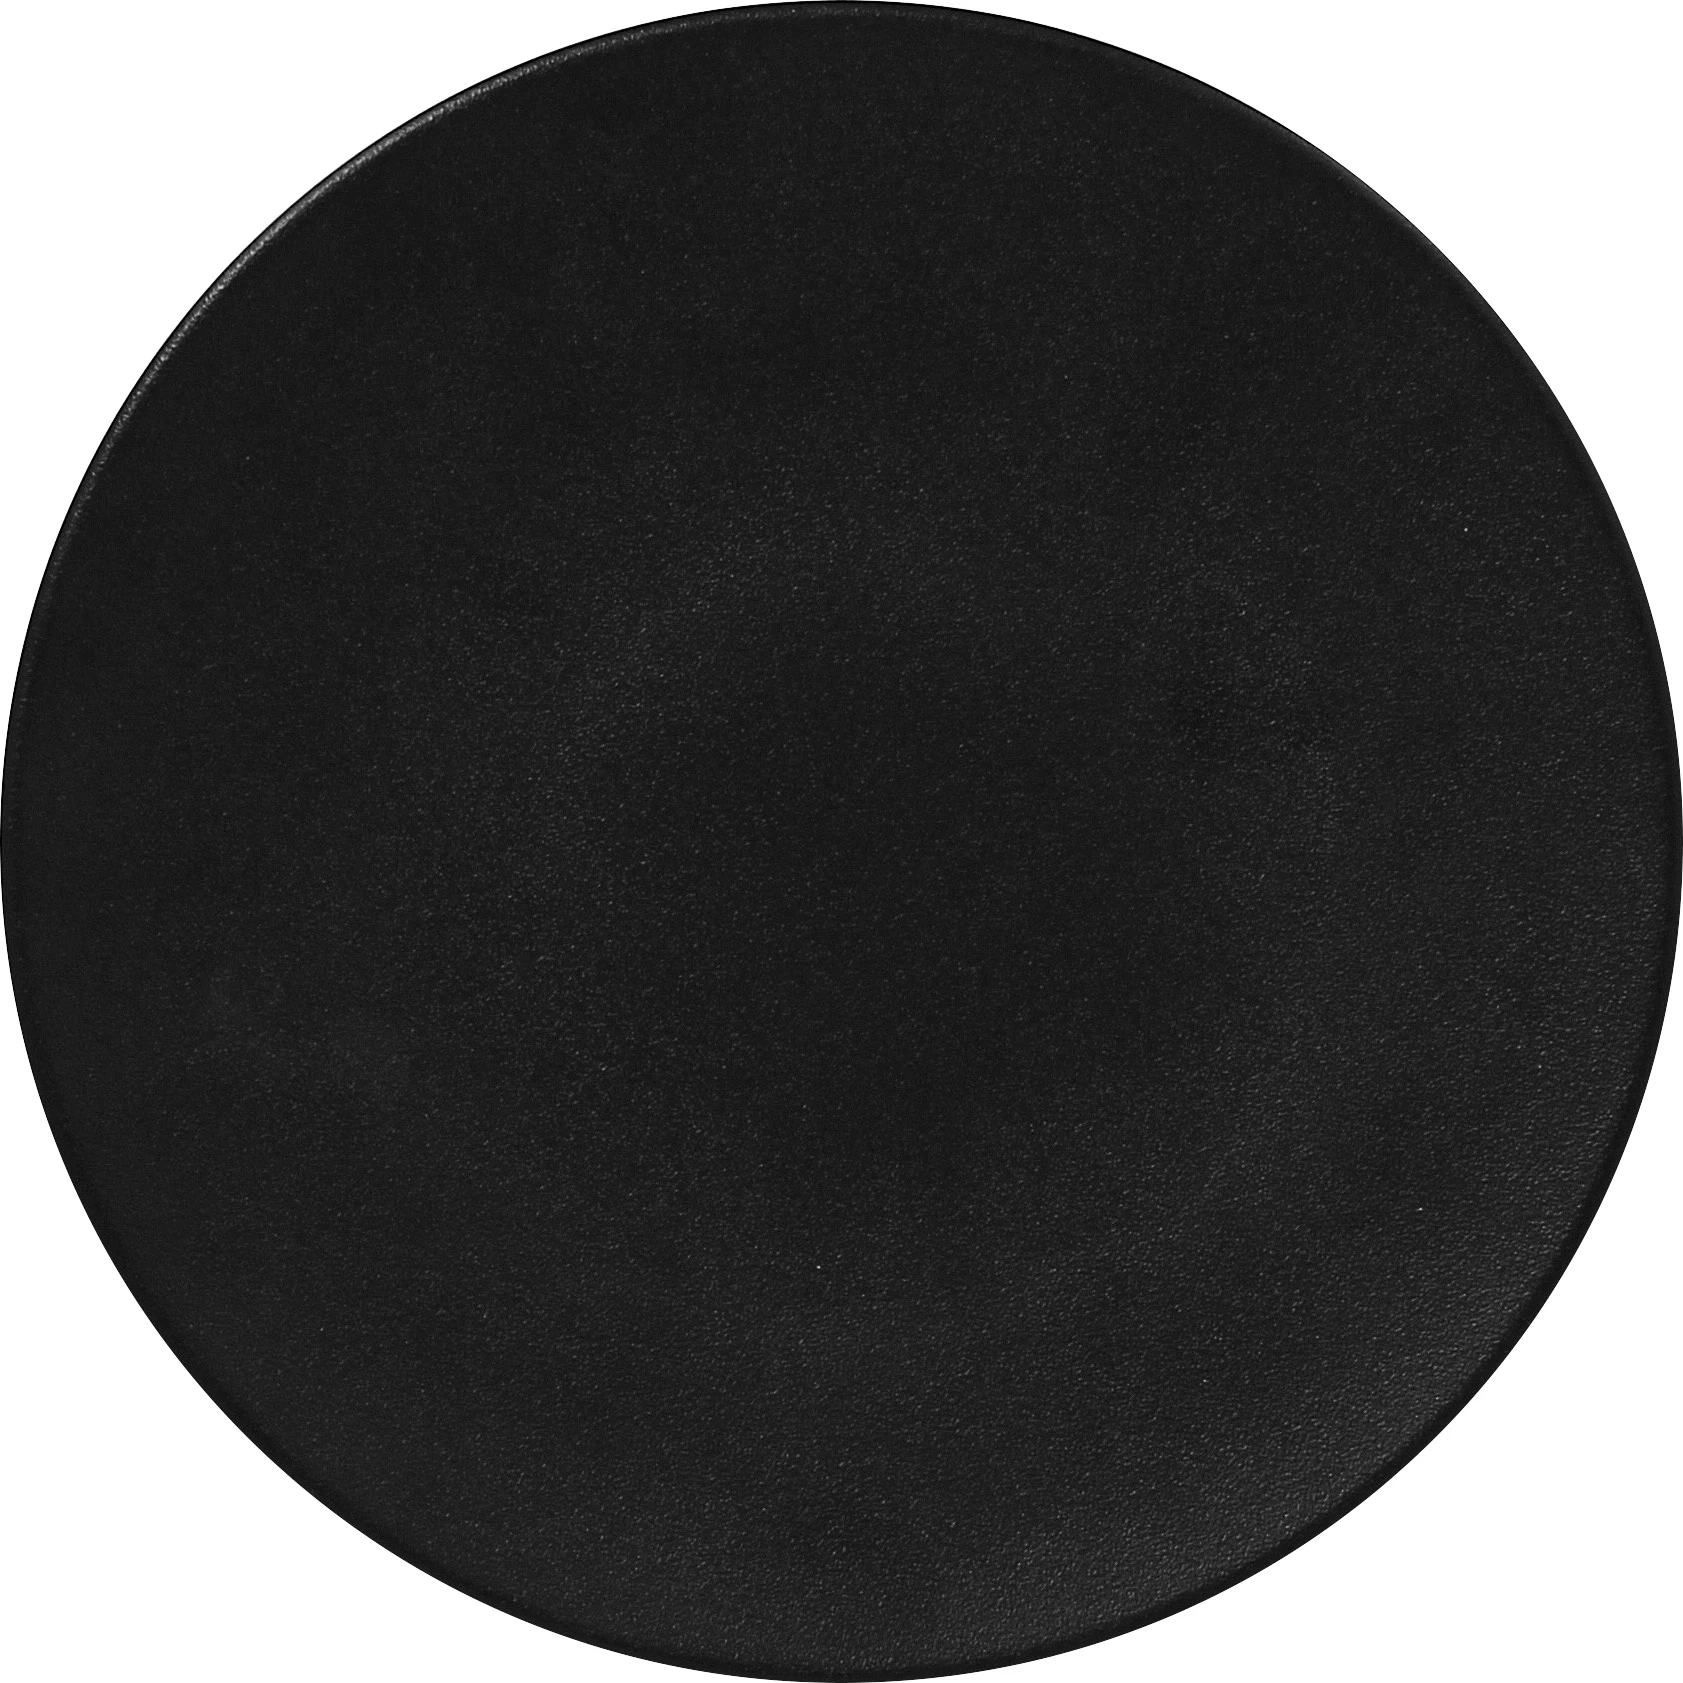 RAK Neofusion tallerken uden fane, flad, sort, ø29 cm